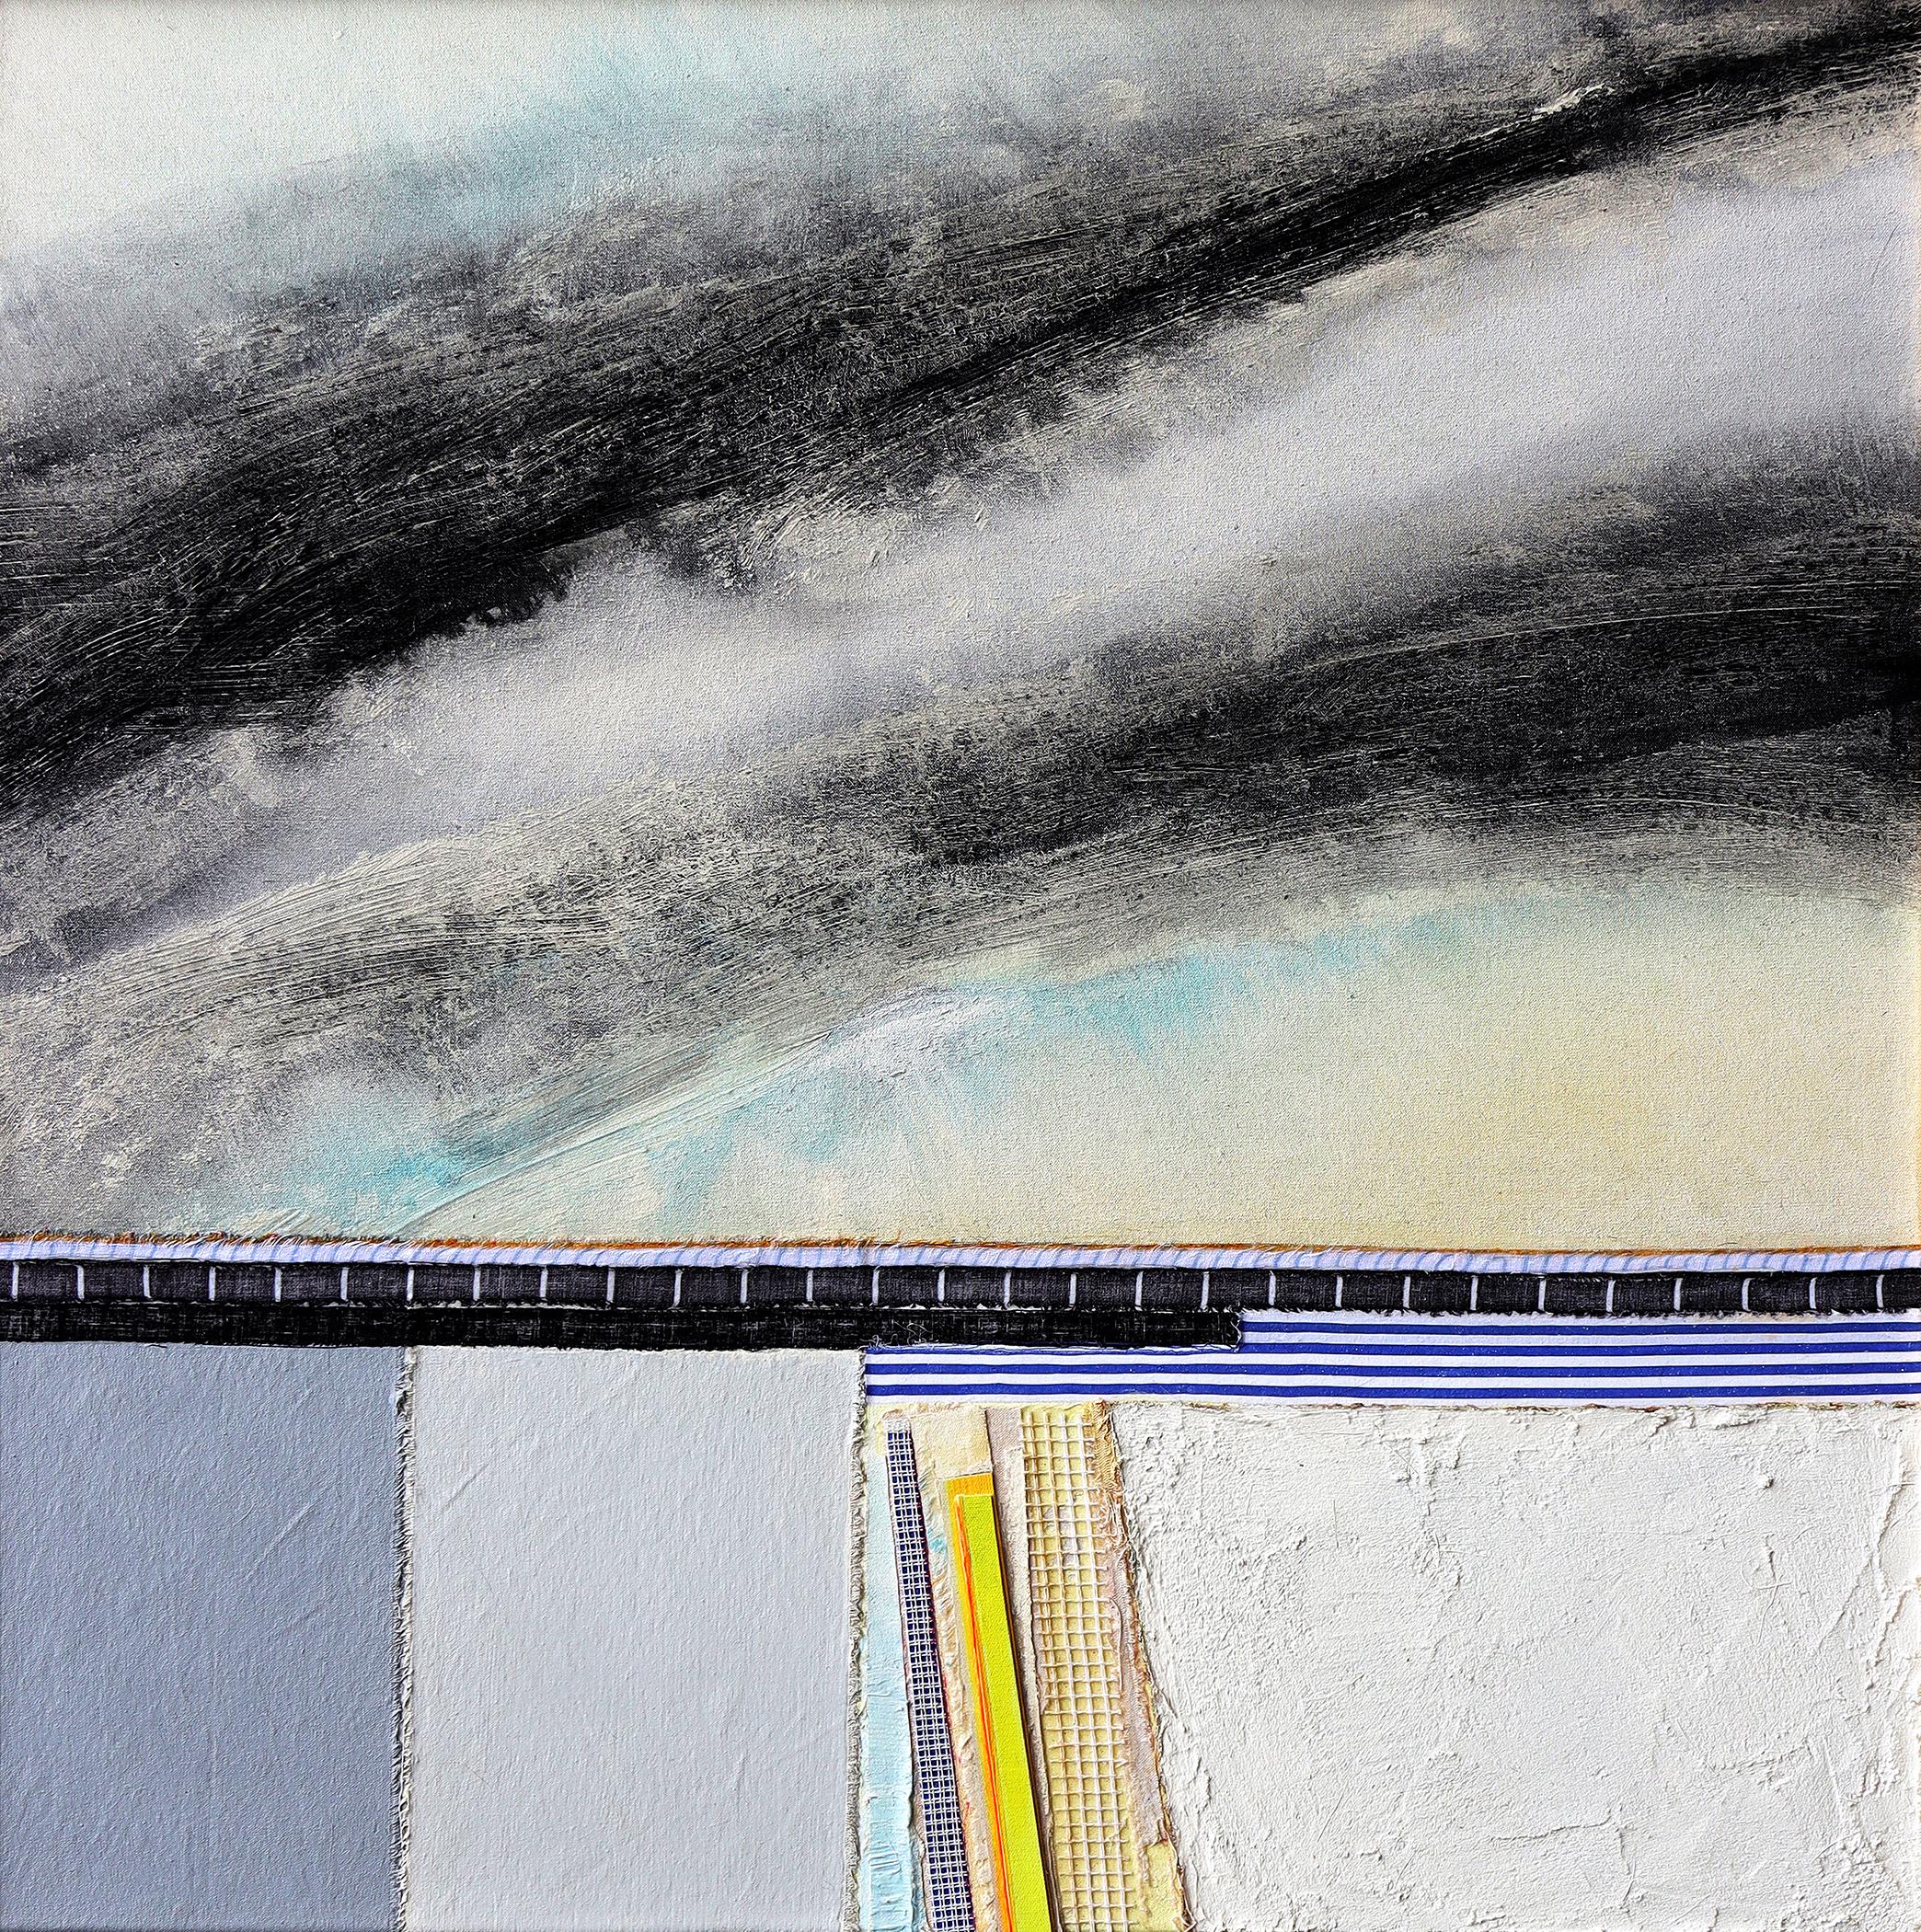 Peinture abstraite et côtière d'Eugene Healy "Hurricane Light" (Lumière de l'ouragan)